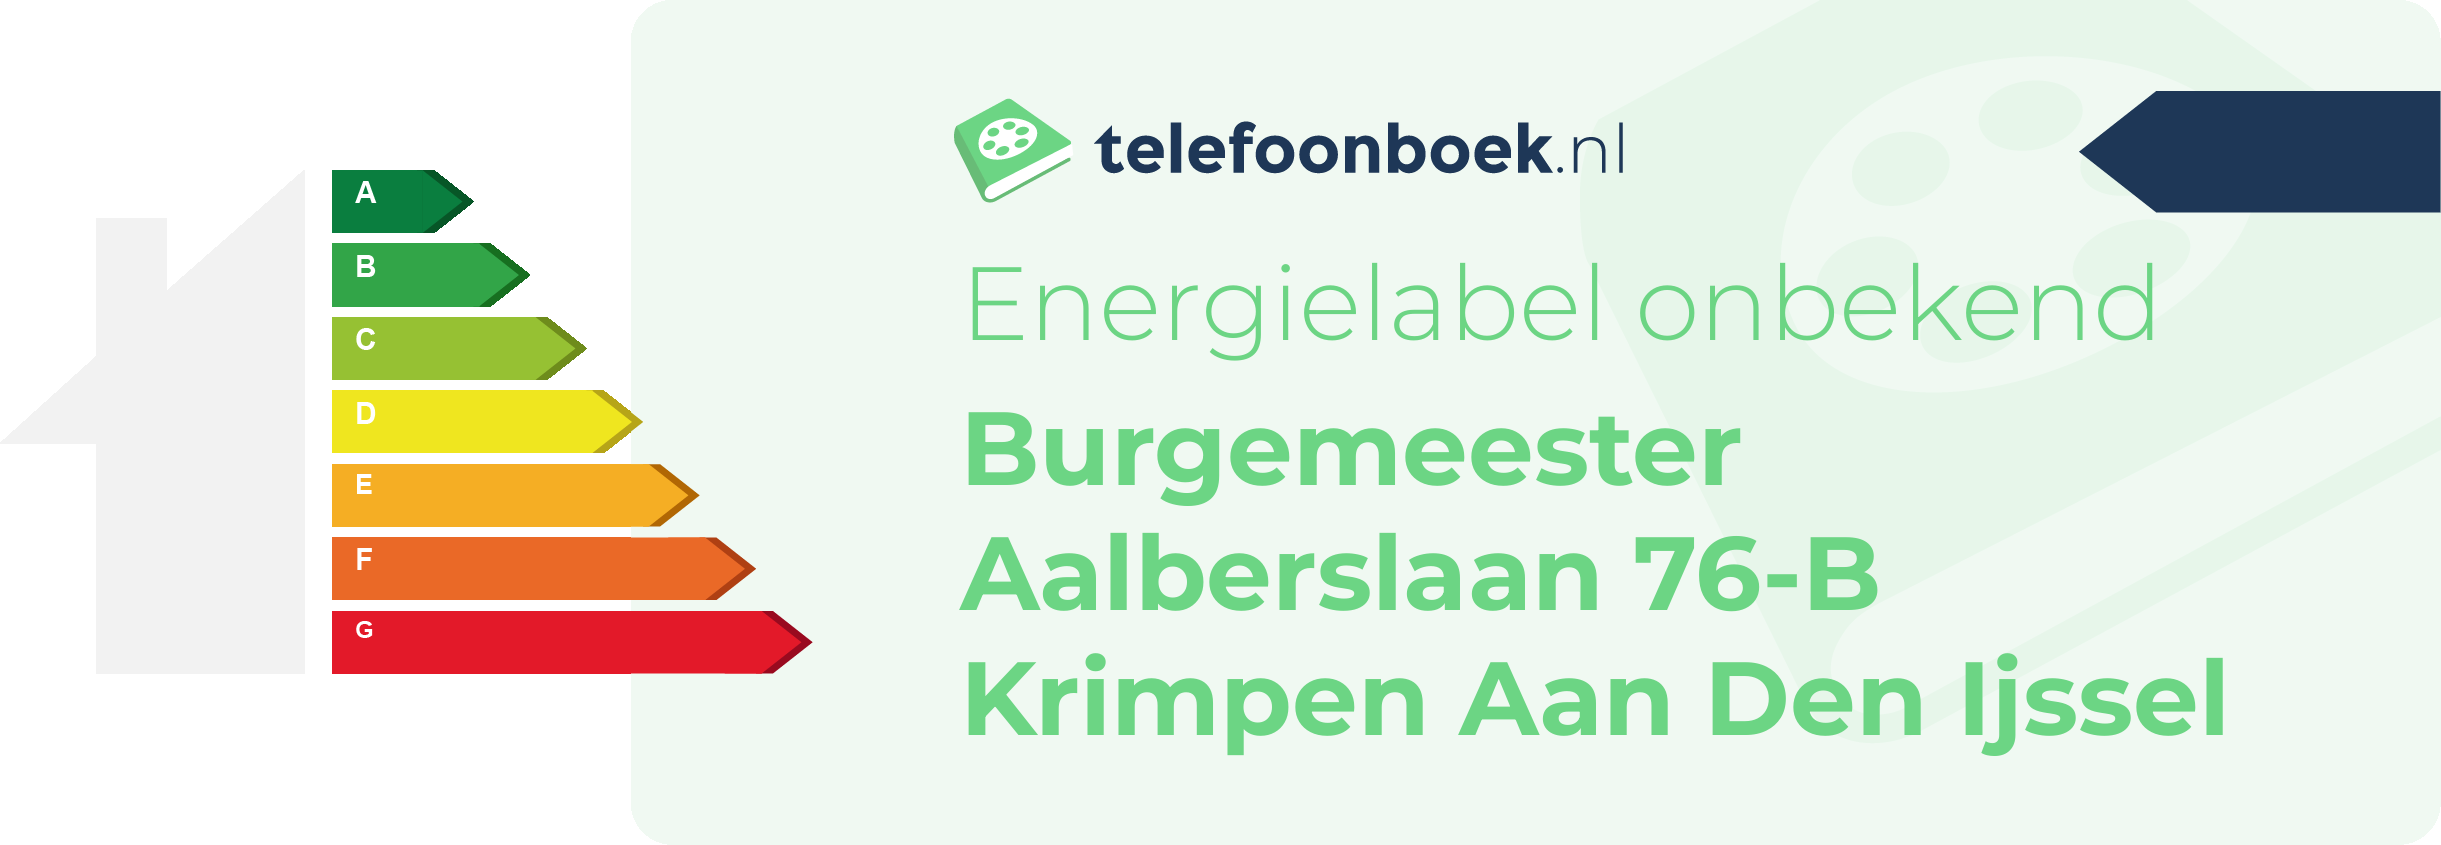 Energielabel Burgemeester Aalberslaan 76-B Krimpen Aan Den Ijssel